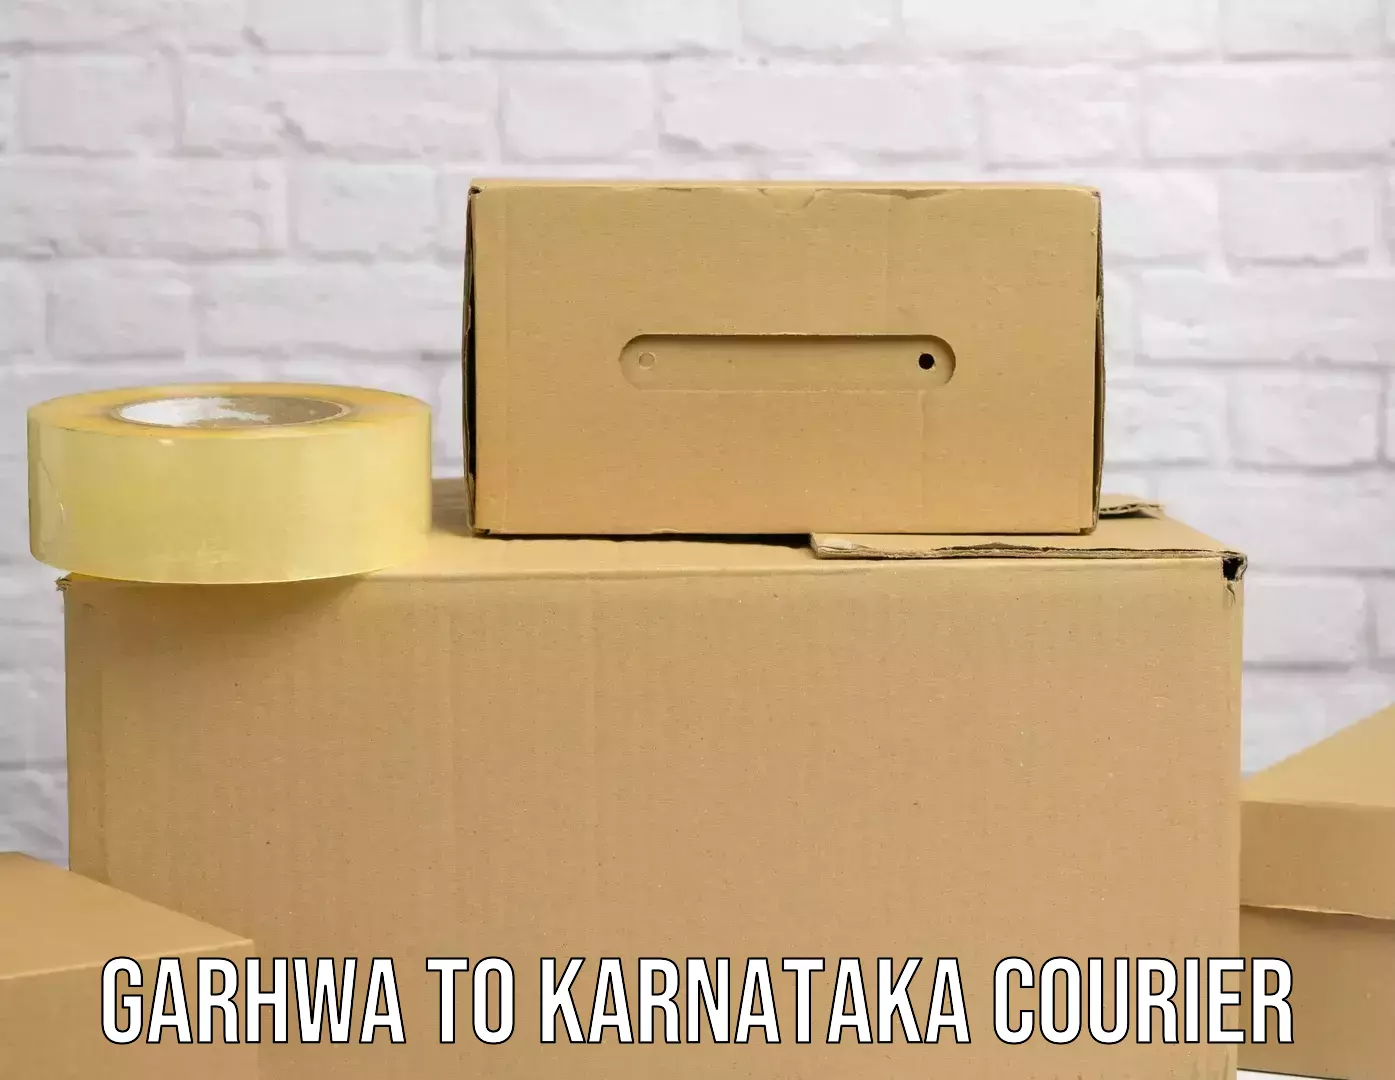 Package tracking Garhwa to Bangalore